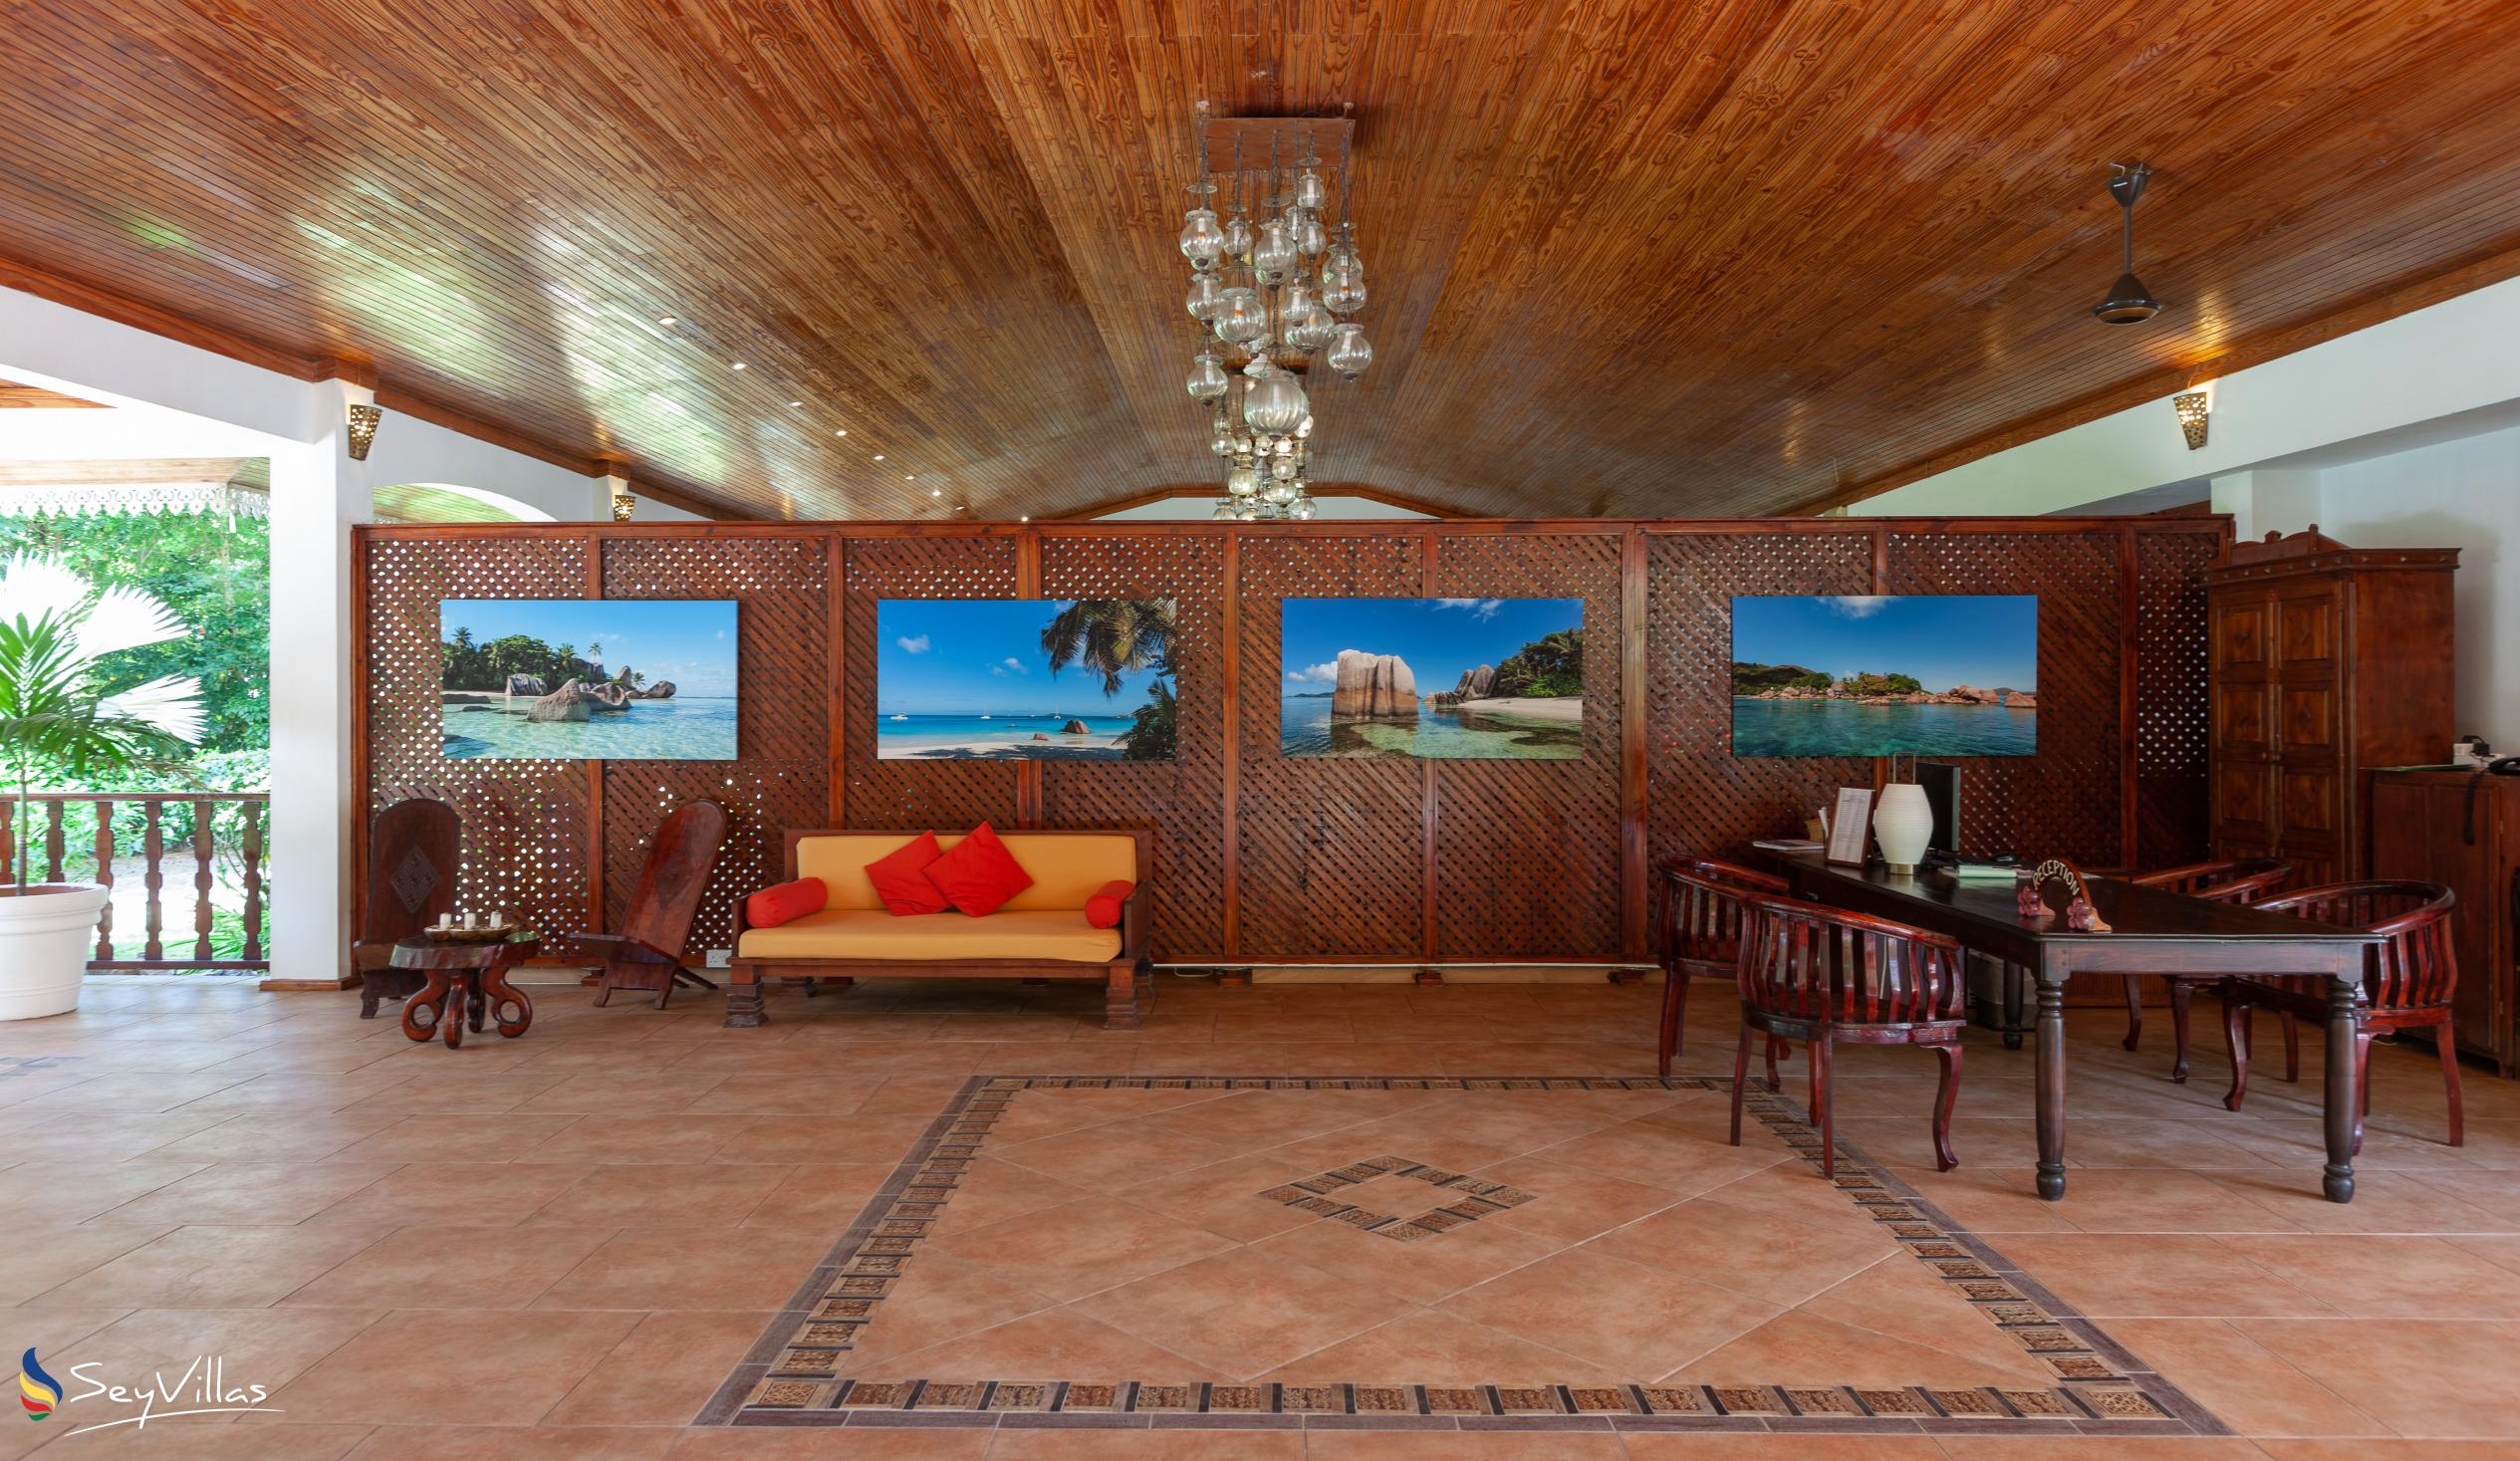 Foto 21: Hotel Cote D'Or Lodge - Innenbereich - Praslin (Seychellen)